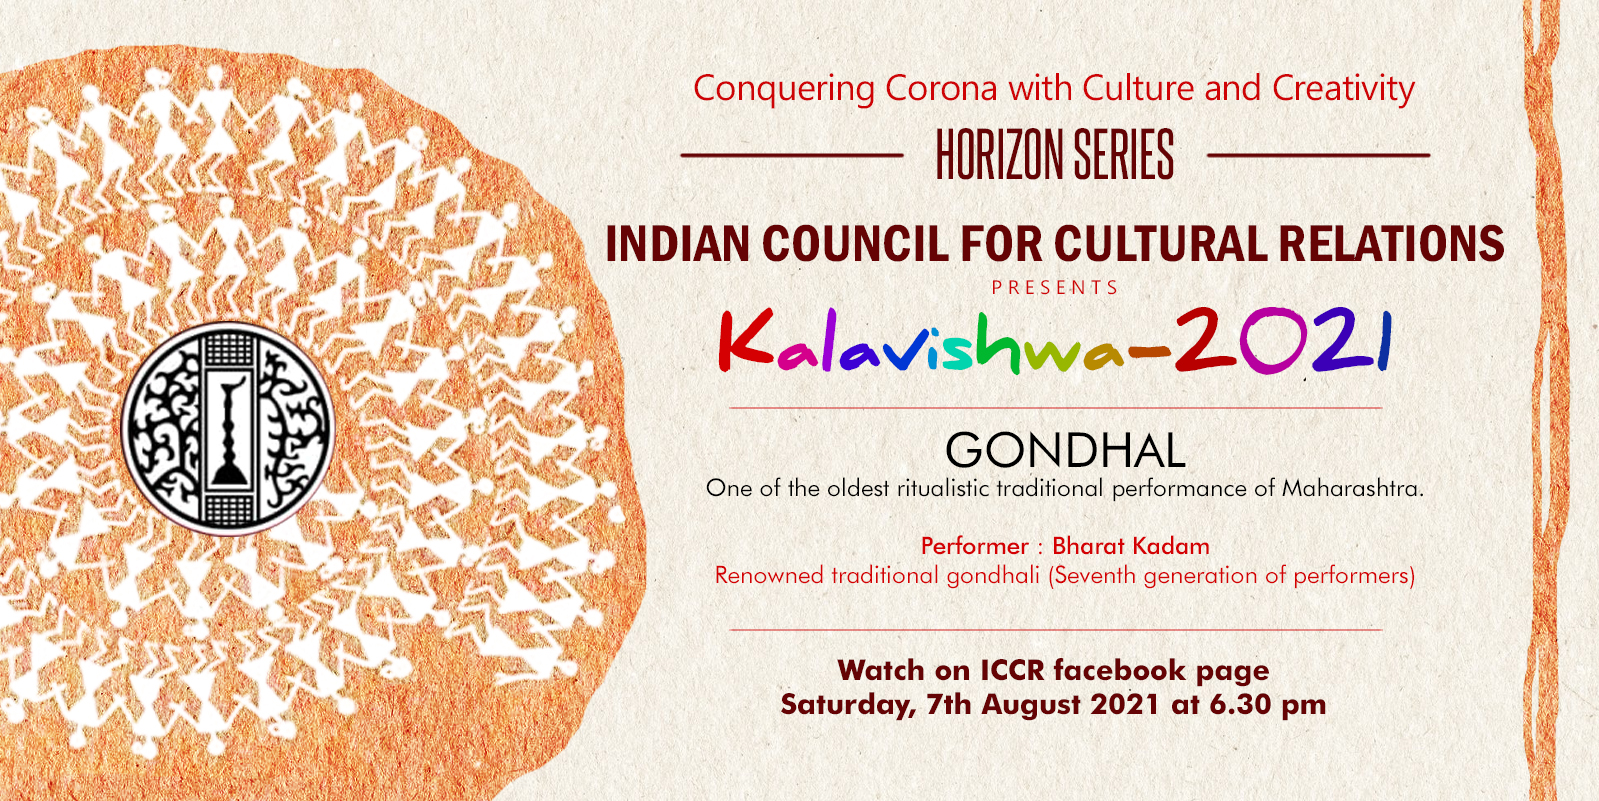 ICCR प्रसिद्ध पारंपरिक गोंधली (कलाकारों की सातवीं पीढ़ी) श्री भरत कदम द्वारा कला विश्व अभियान 2021 'गोंधल' की तीसरी कड़ी शनिवार 7 अगस्त 2021 को शाम 7.00 बजे प्रस्तुत कर रहा है।